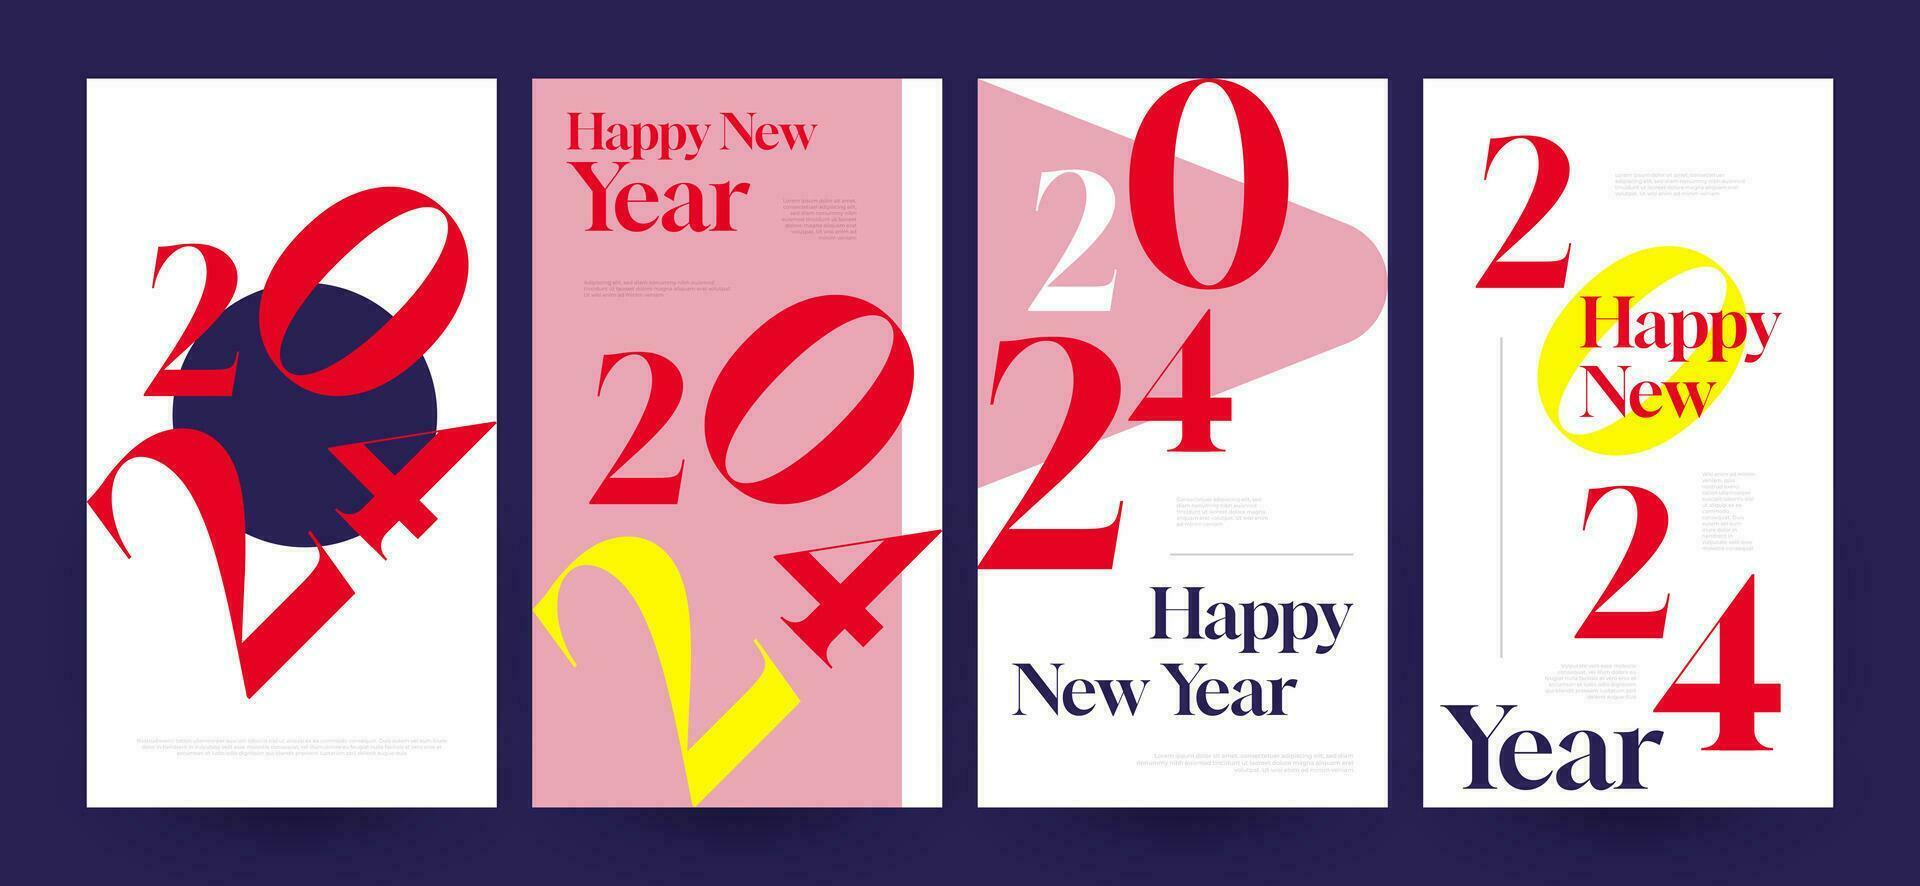 creativo y vistoso 2024 contento nuevo año póster colocar. adecuado, para tarjeta, bandera, póster, volantes, cubrir, y social medios de comunicación enviar modelo vector